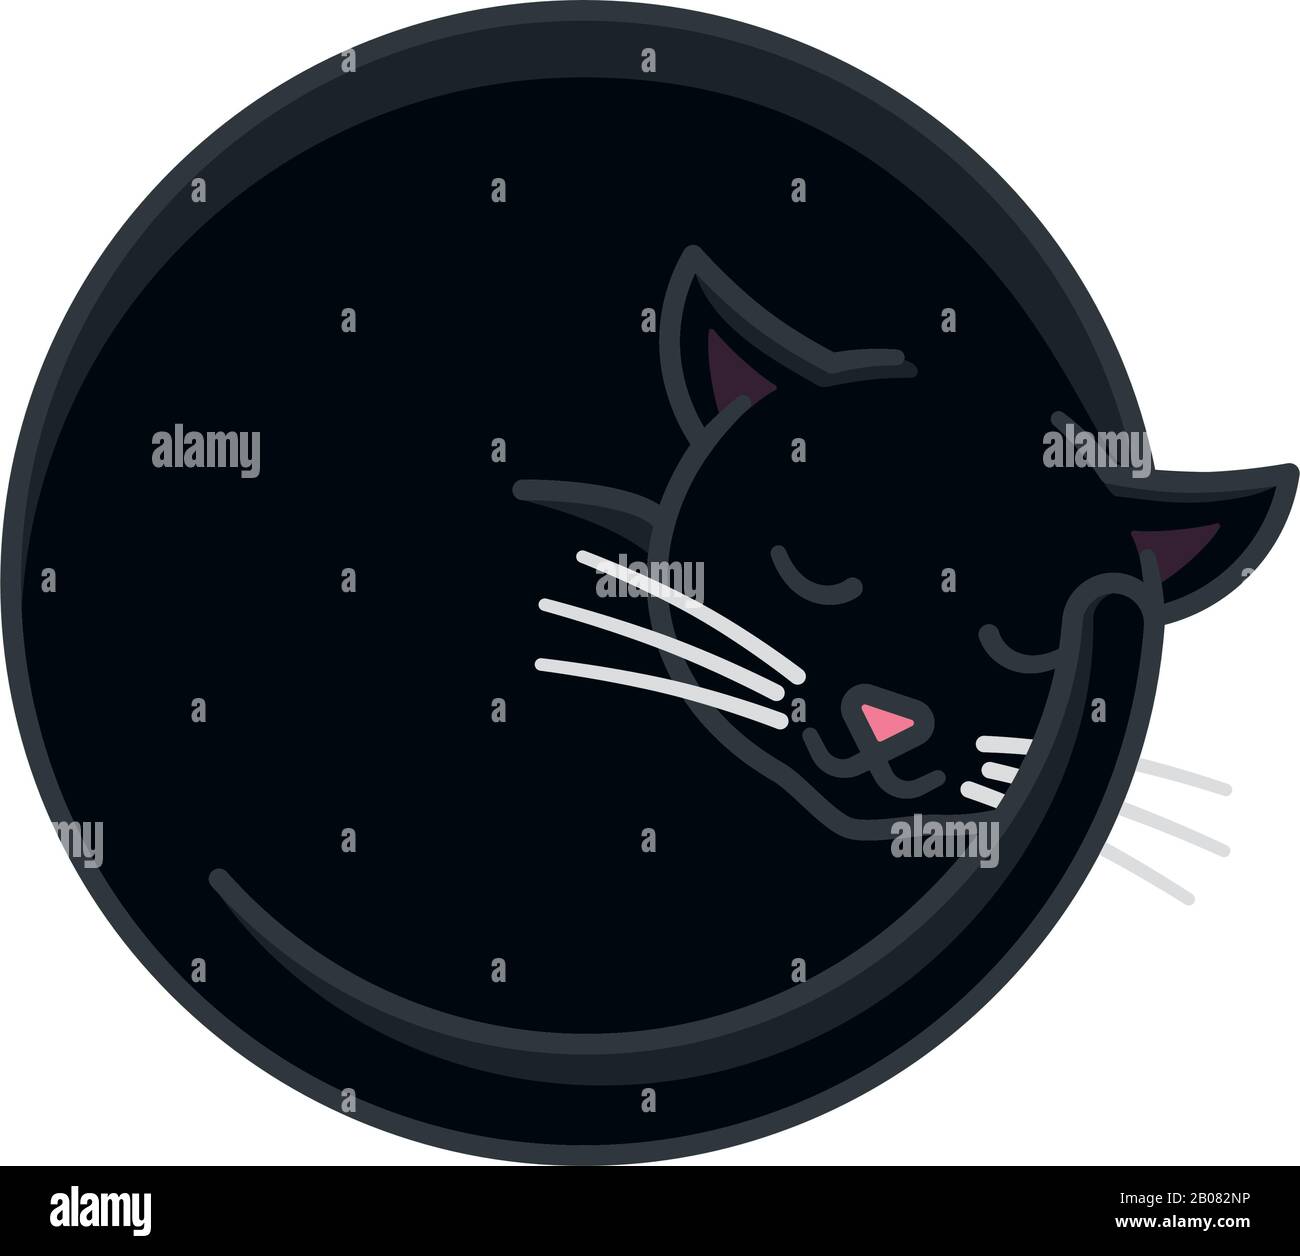 Vektorgrafiken für schlafende schwarze Katzen für den Weltschlaftag am 13. März. Niedliches, isoliertes Farbsymbol für Haustier und Tragekomfort. Stock Vektor